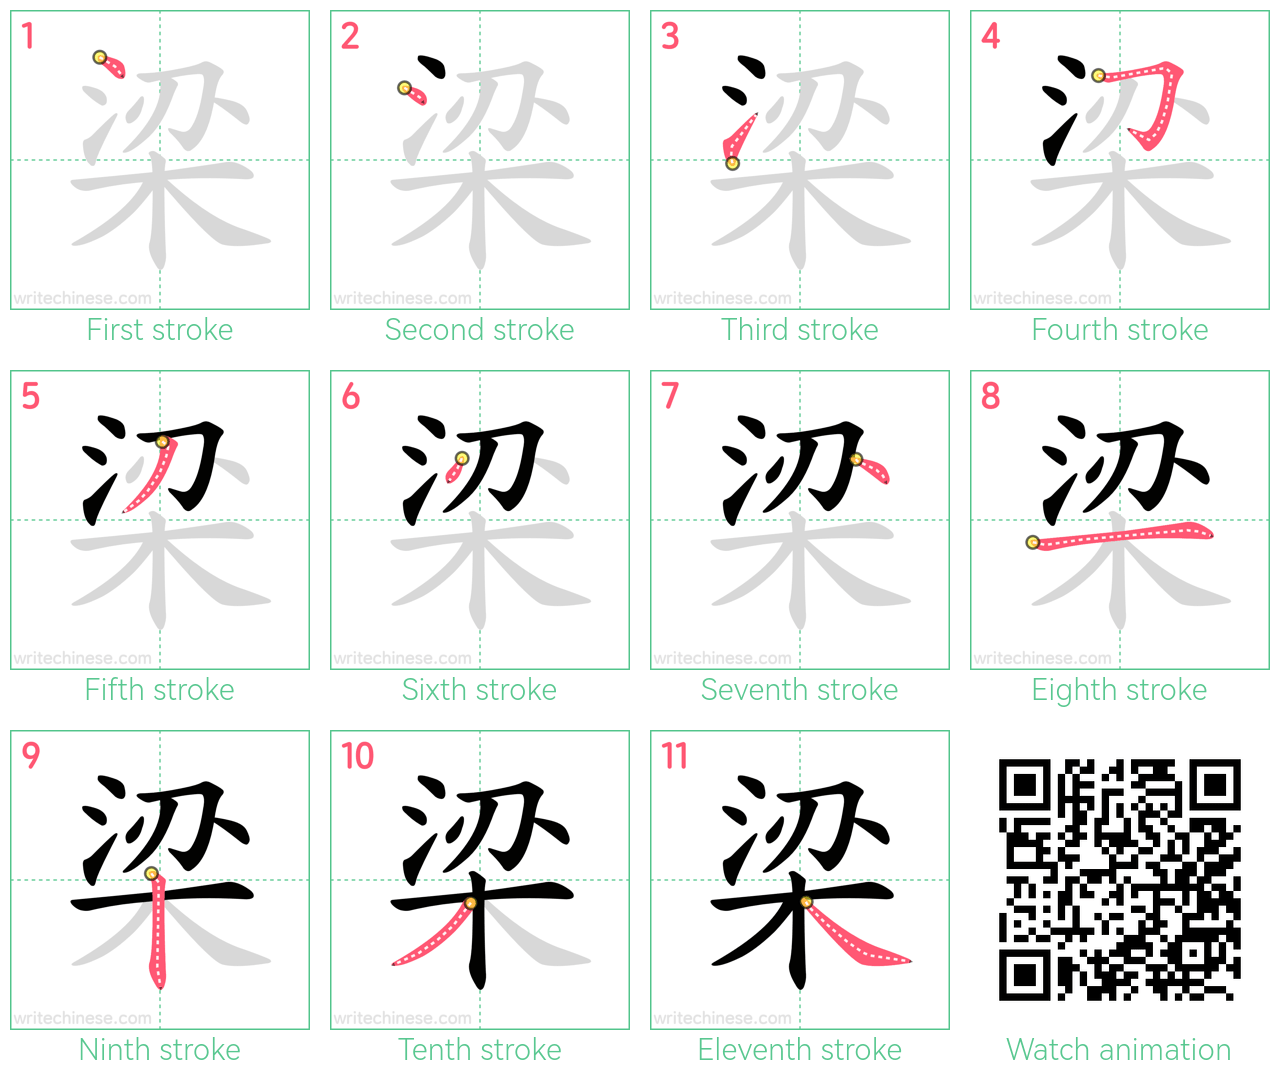 梁 step-by-step stroke order diagrams